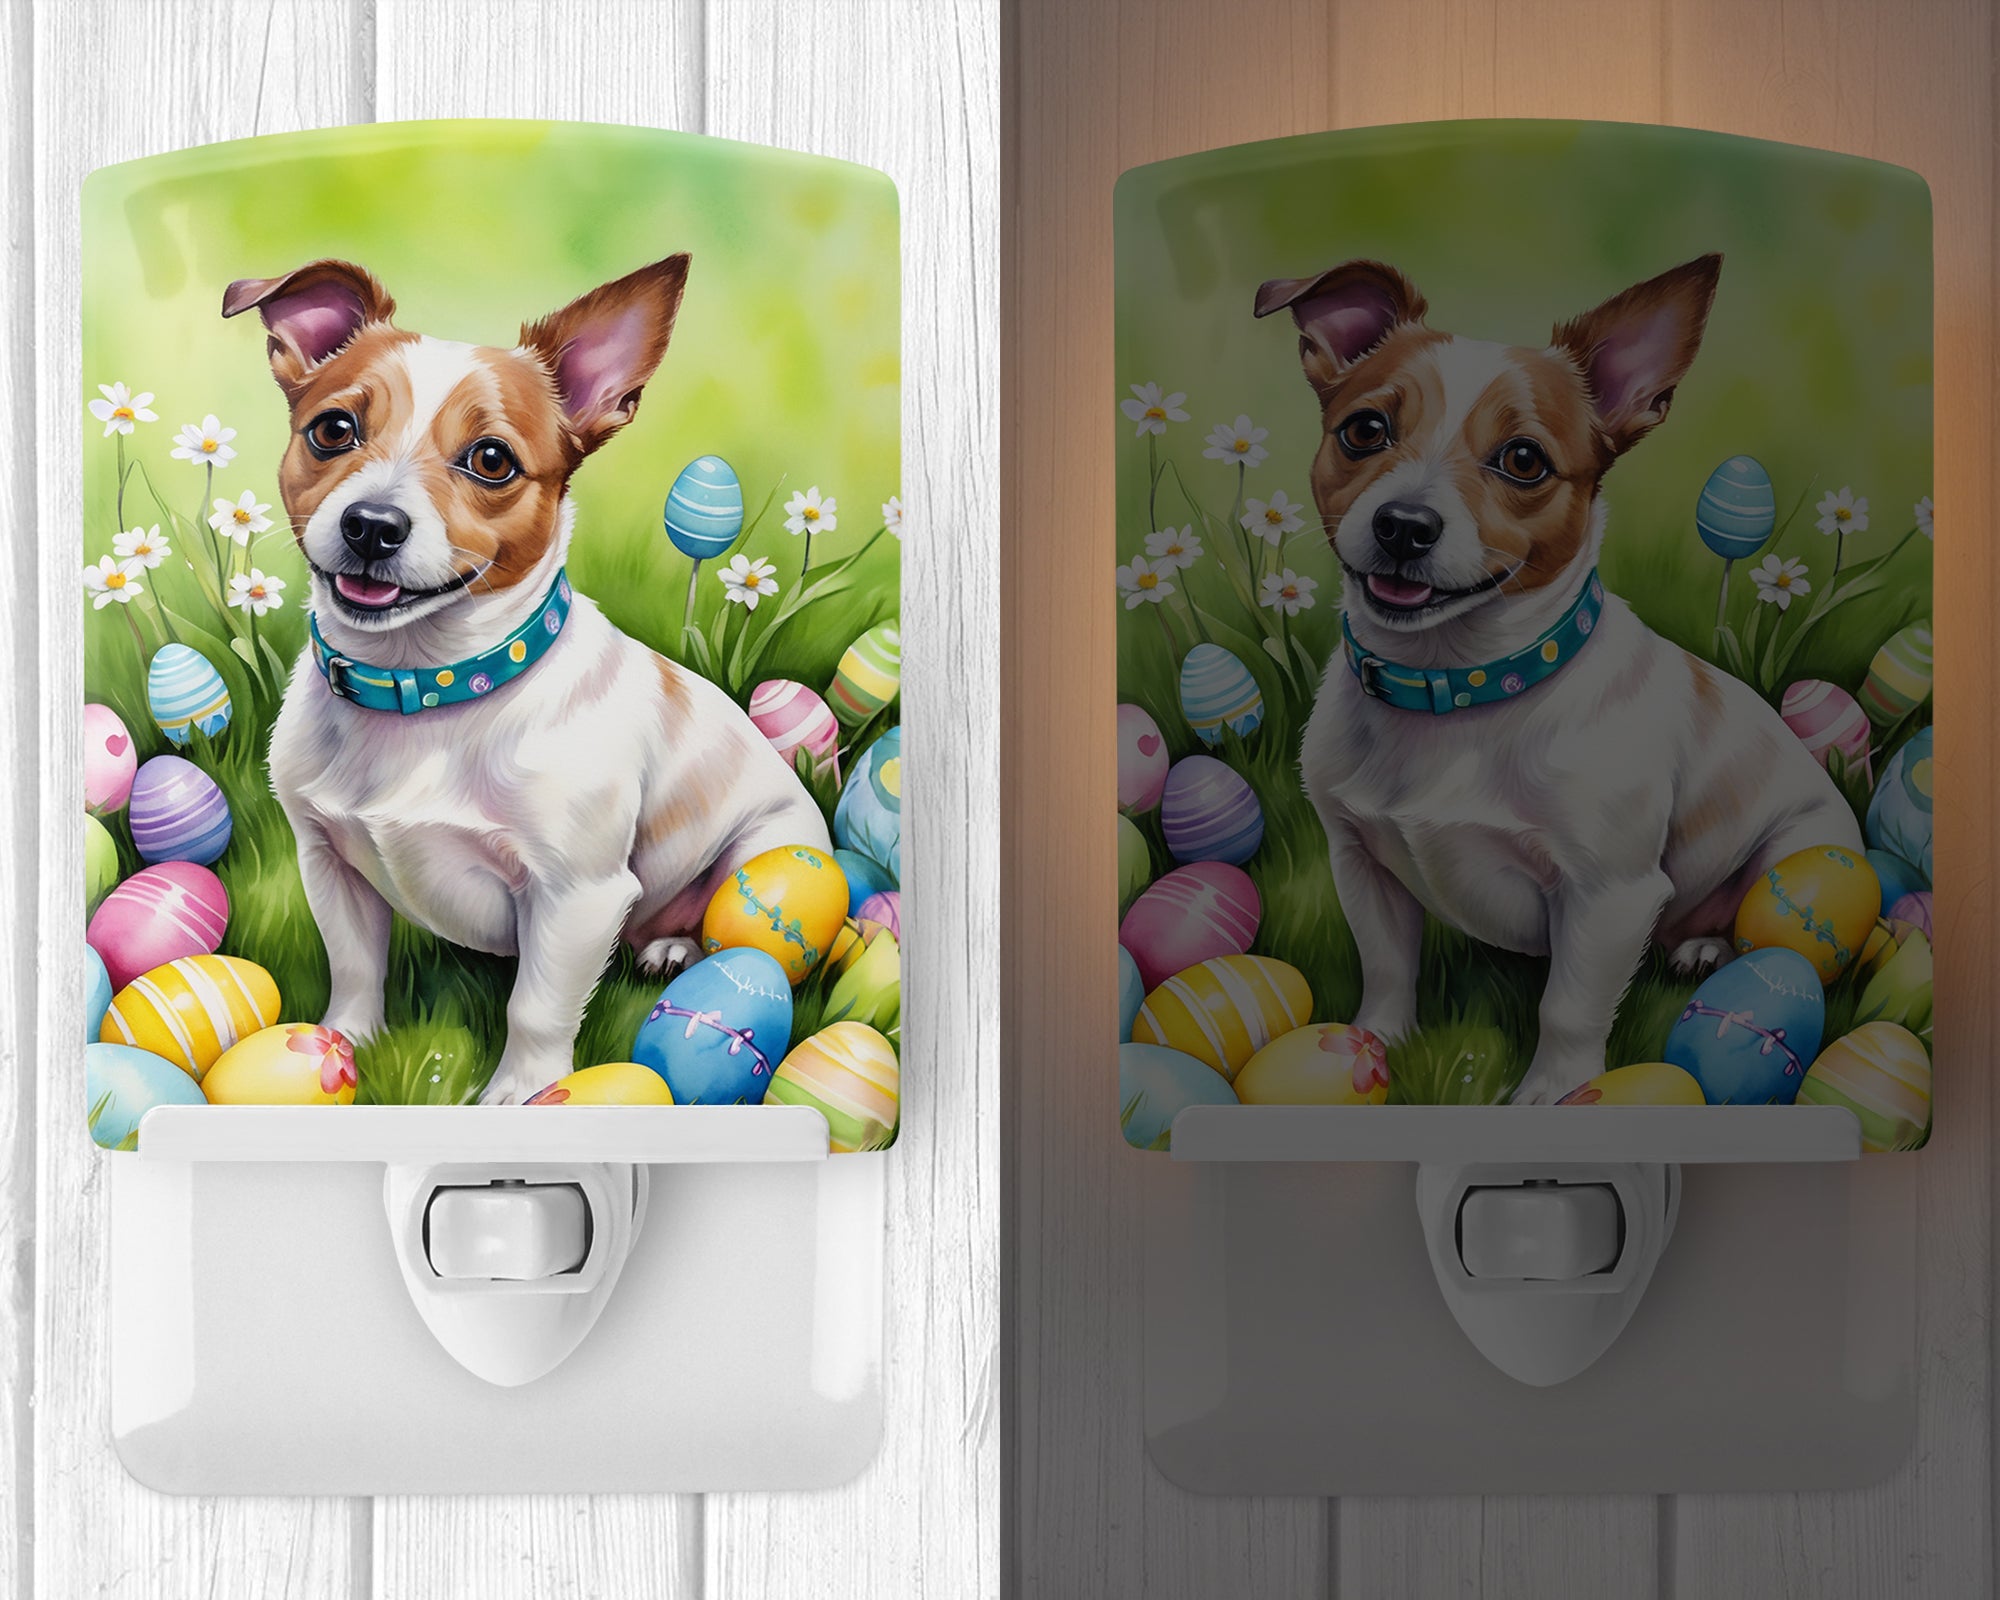 Jack Russell Terrier Easter Egg Hunt Ceramic Night Light